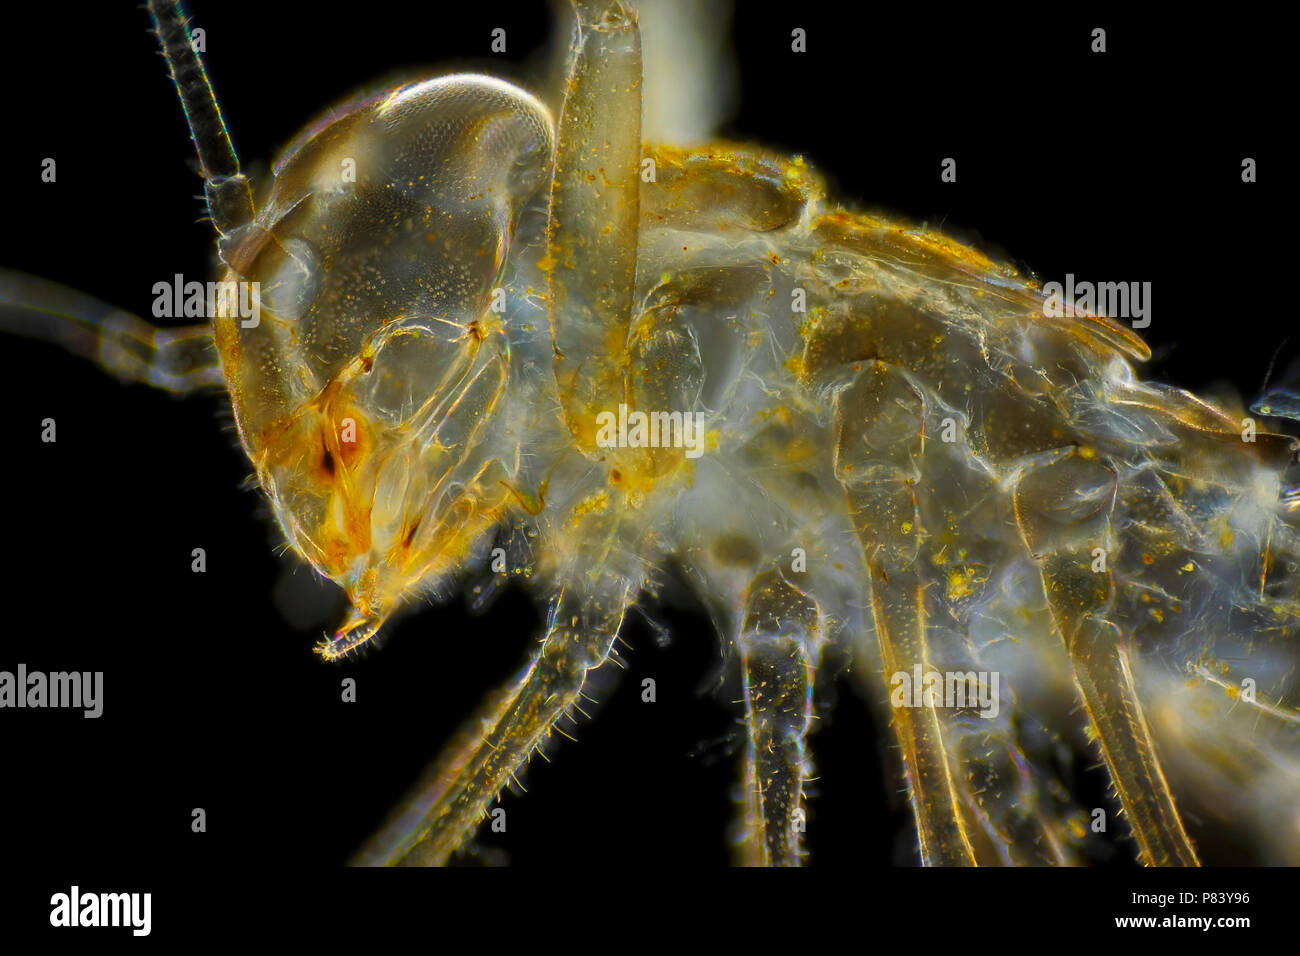 Microscopic view of mayfly larva (naiad, nymph) empty skin. Darkfield illumination. Stock Photo